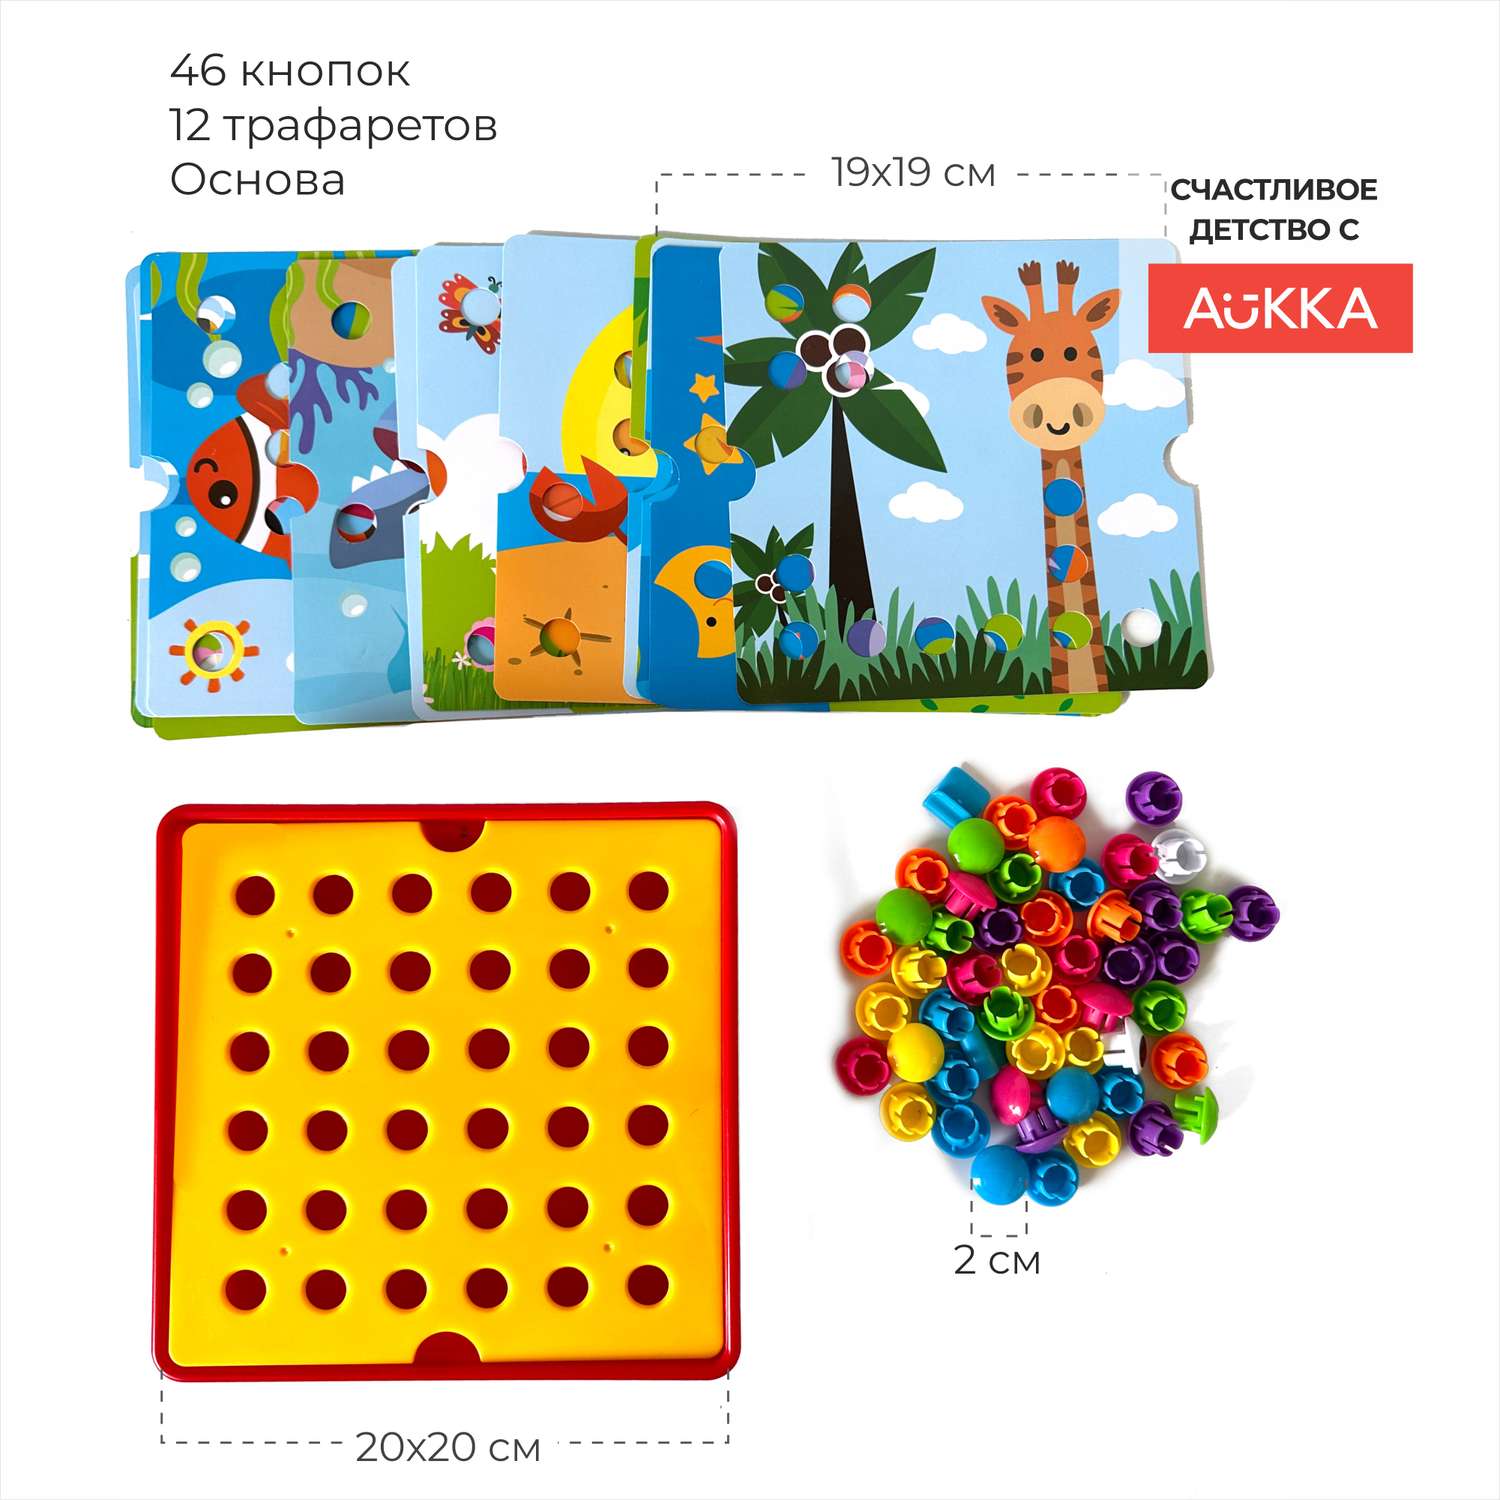 Мозаика AUKKA развивающая игрушка для малышей в подарок - фото 4